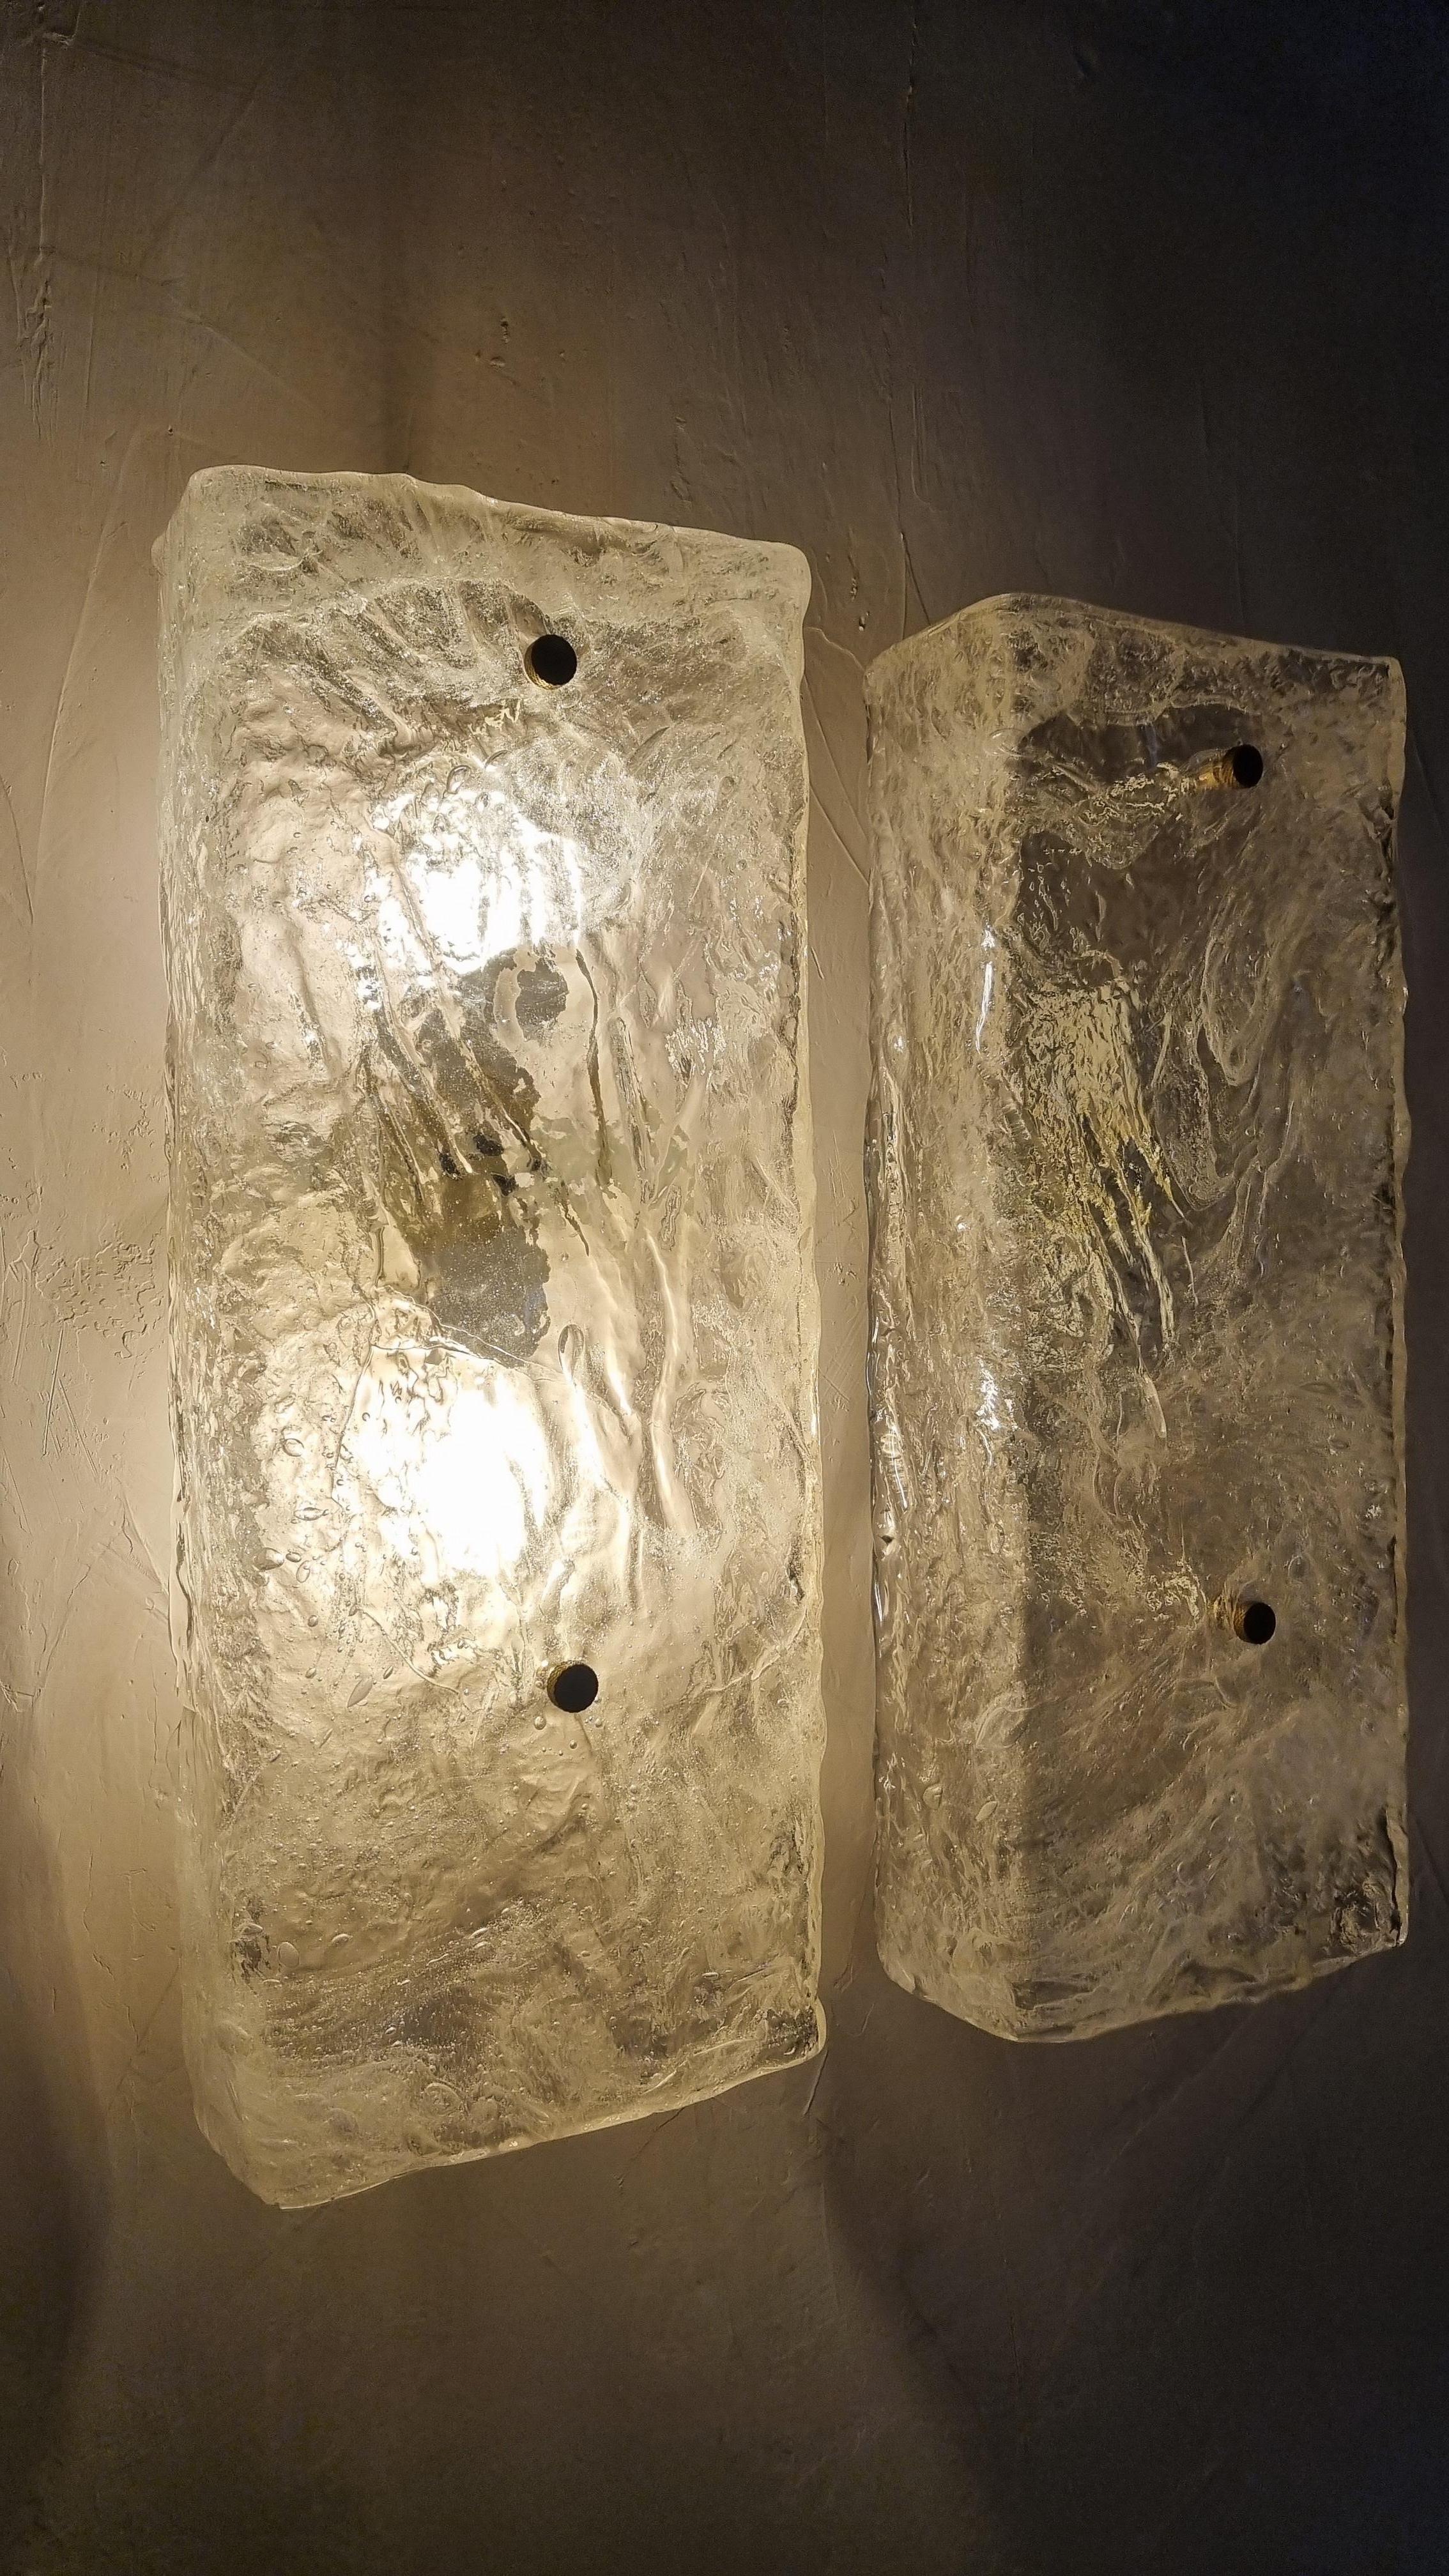 Ensemble de 2 appliques murales produites par Barovier & Toso dans les années 60, structure en métal peint, détails en laiton et diffuseurs en verre de Murano irisé, deux points lumineux, montage E 27 ampoules.
Excellent état, installation